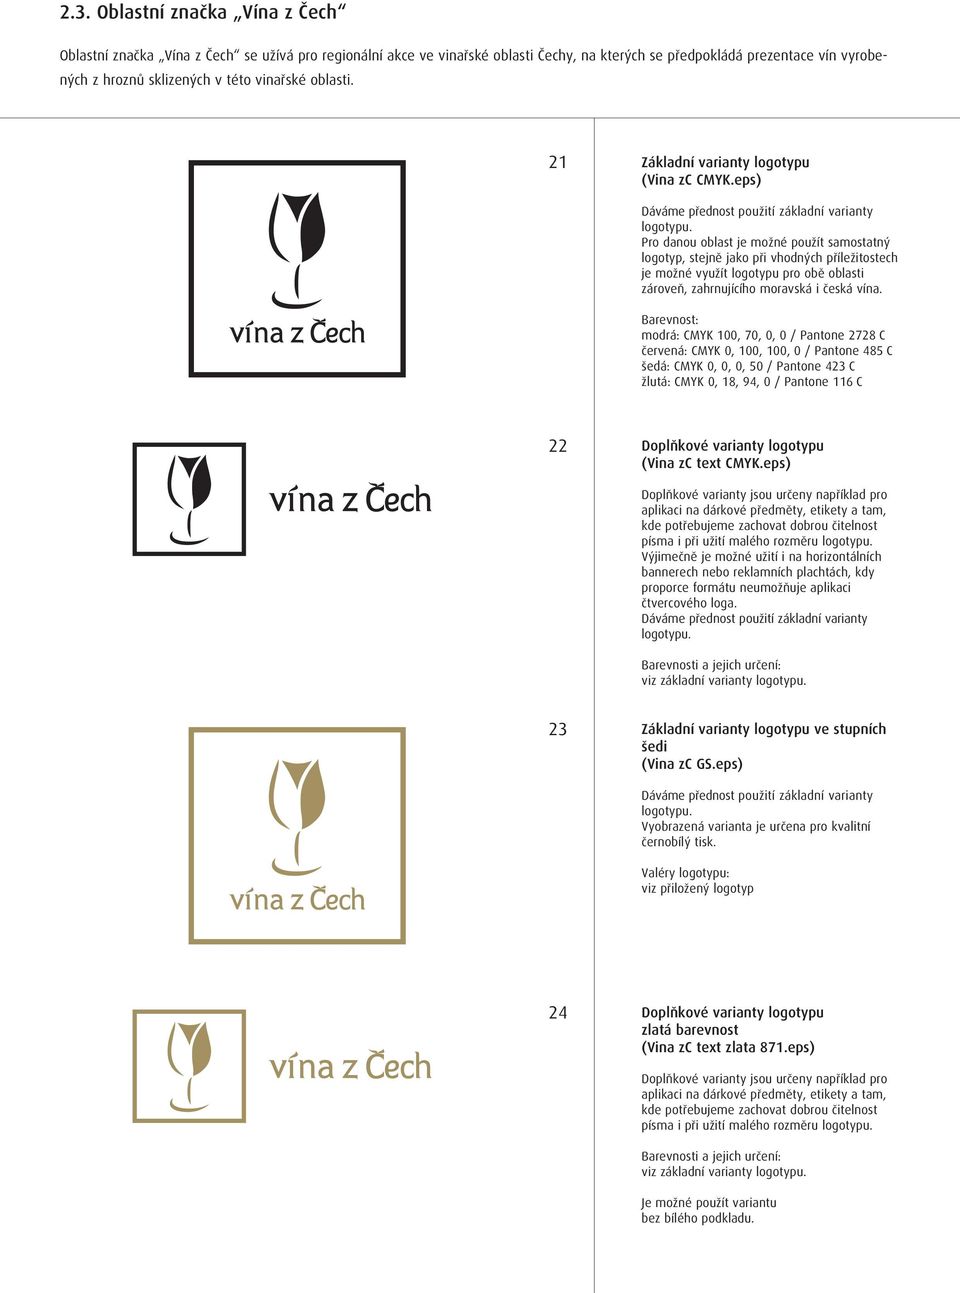 eps) Pro danou oblast je možné použít samostatný logotyp, stejně jako při vhodných příležitostech je možné využít logotypu pro obě oblasti zároveň, zahrnujícího moravská i česká vína.